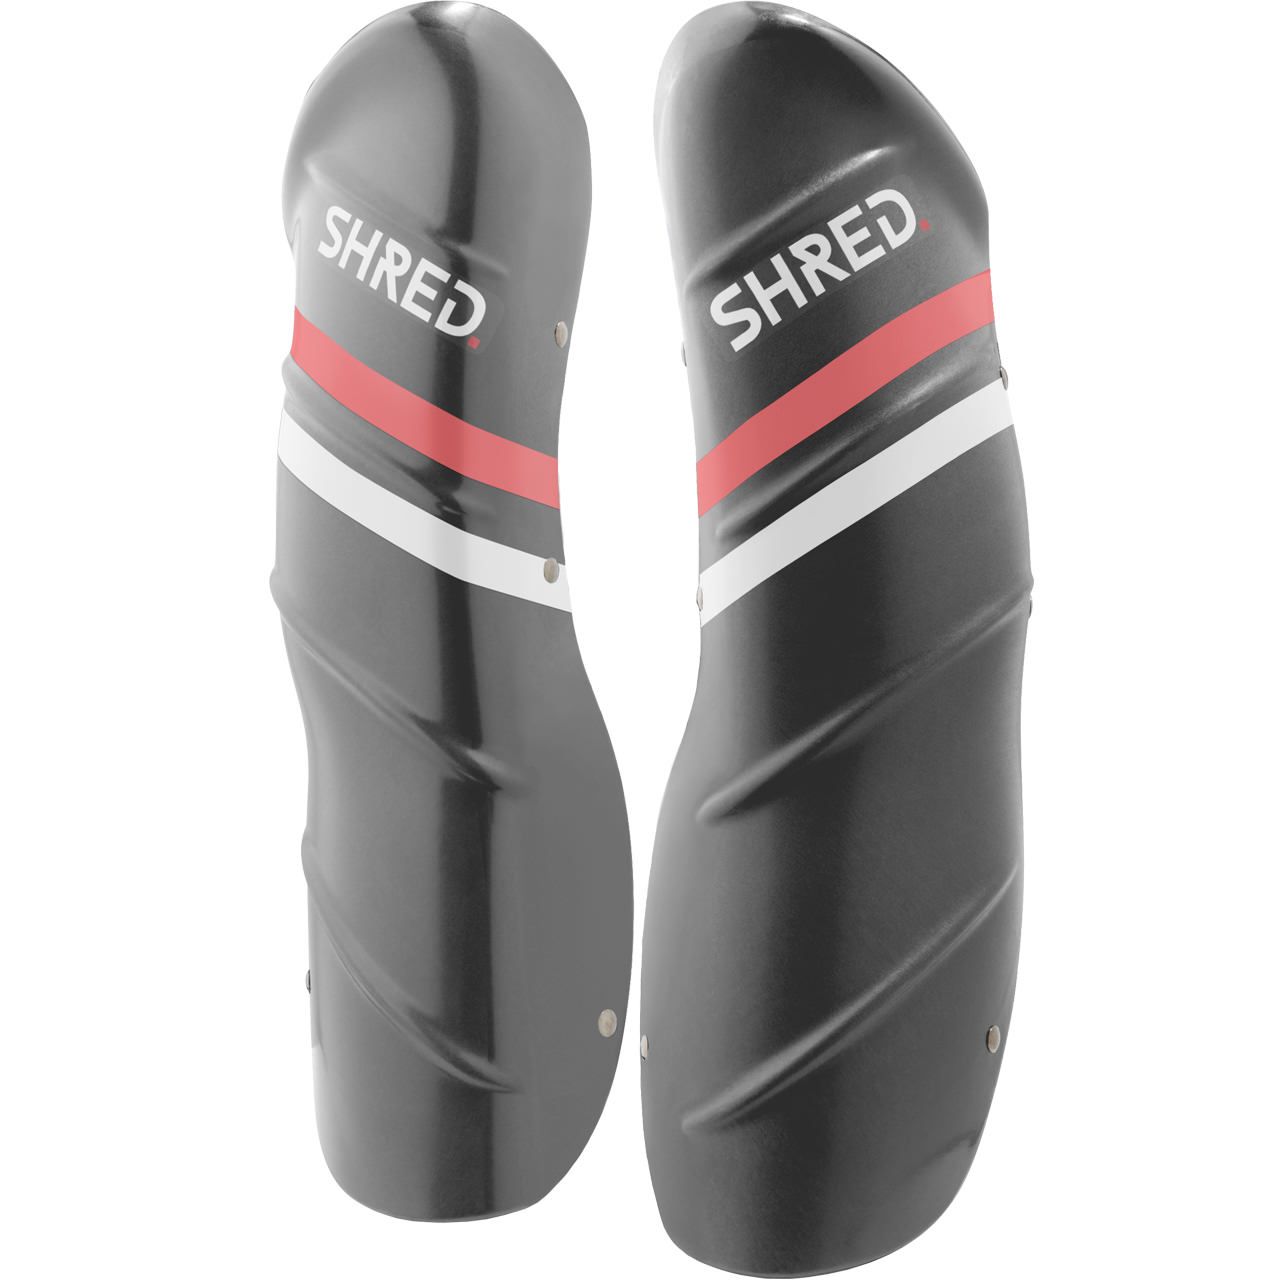 Shred Shin Guards grey/rust PRO von Shred